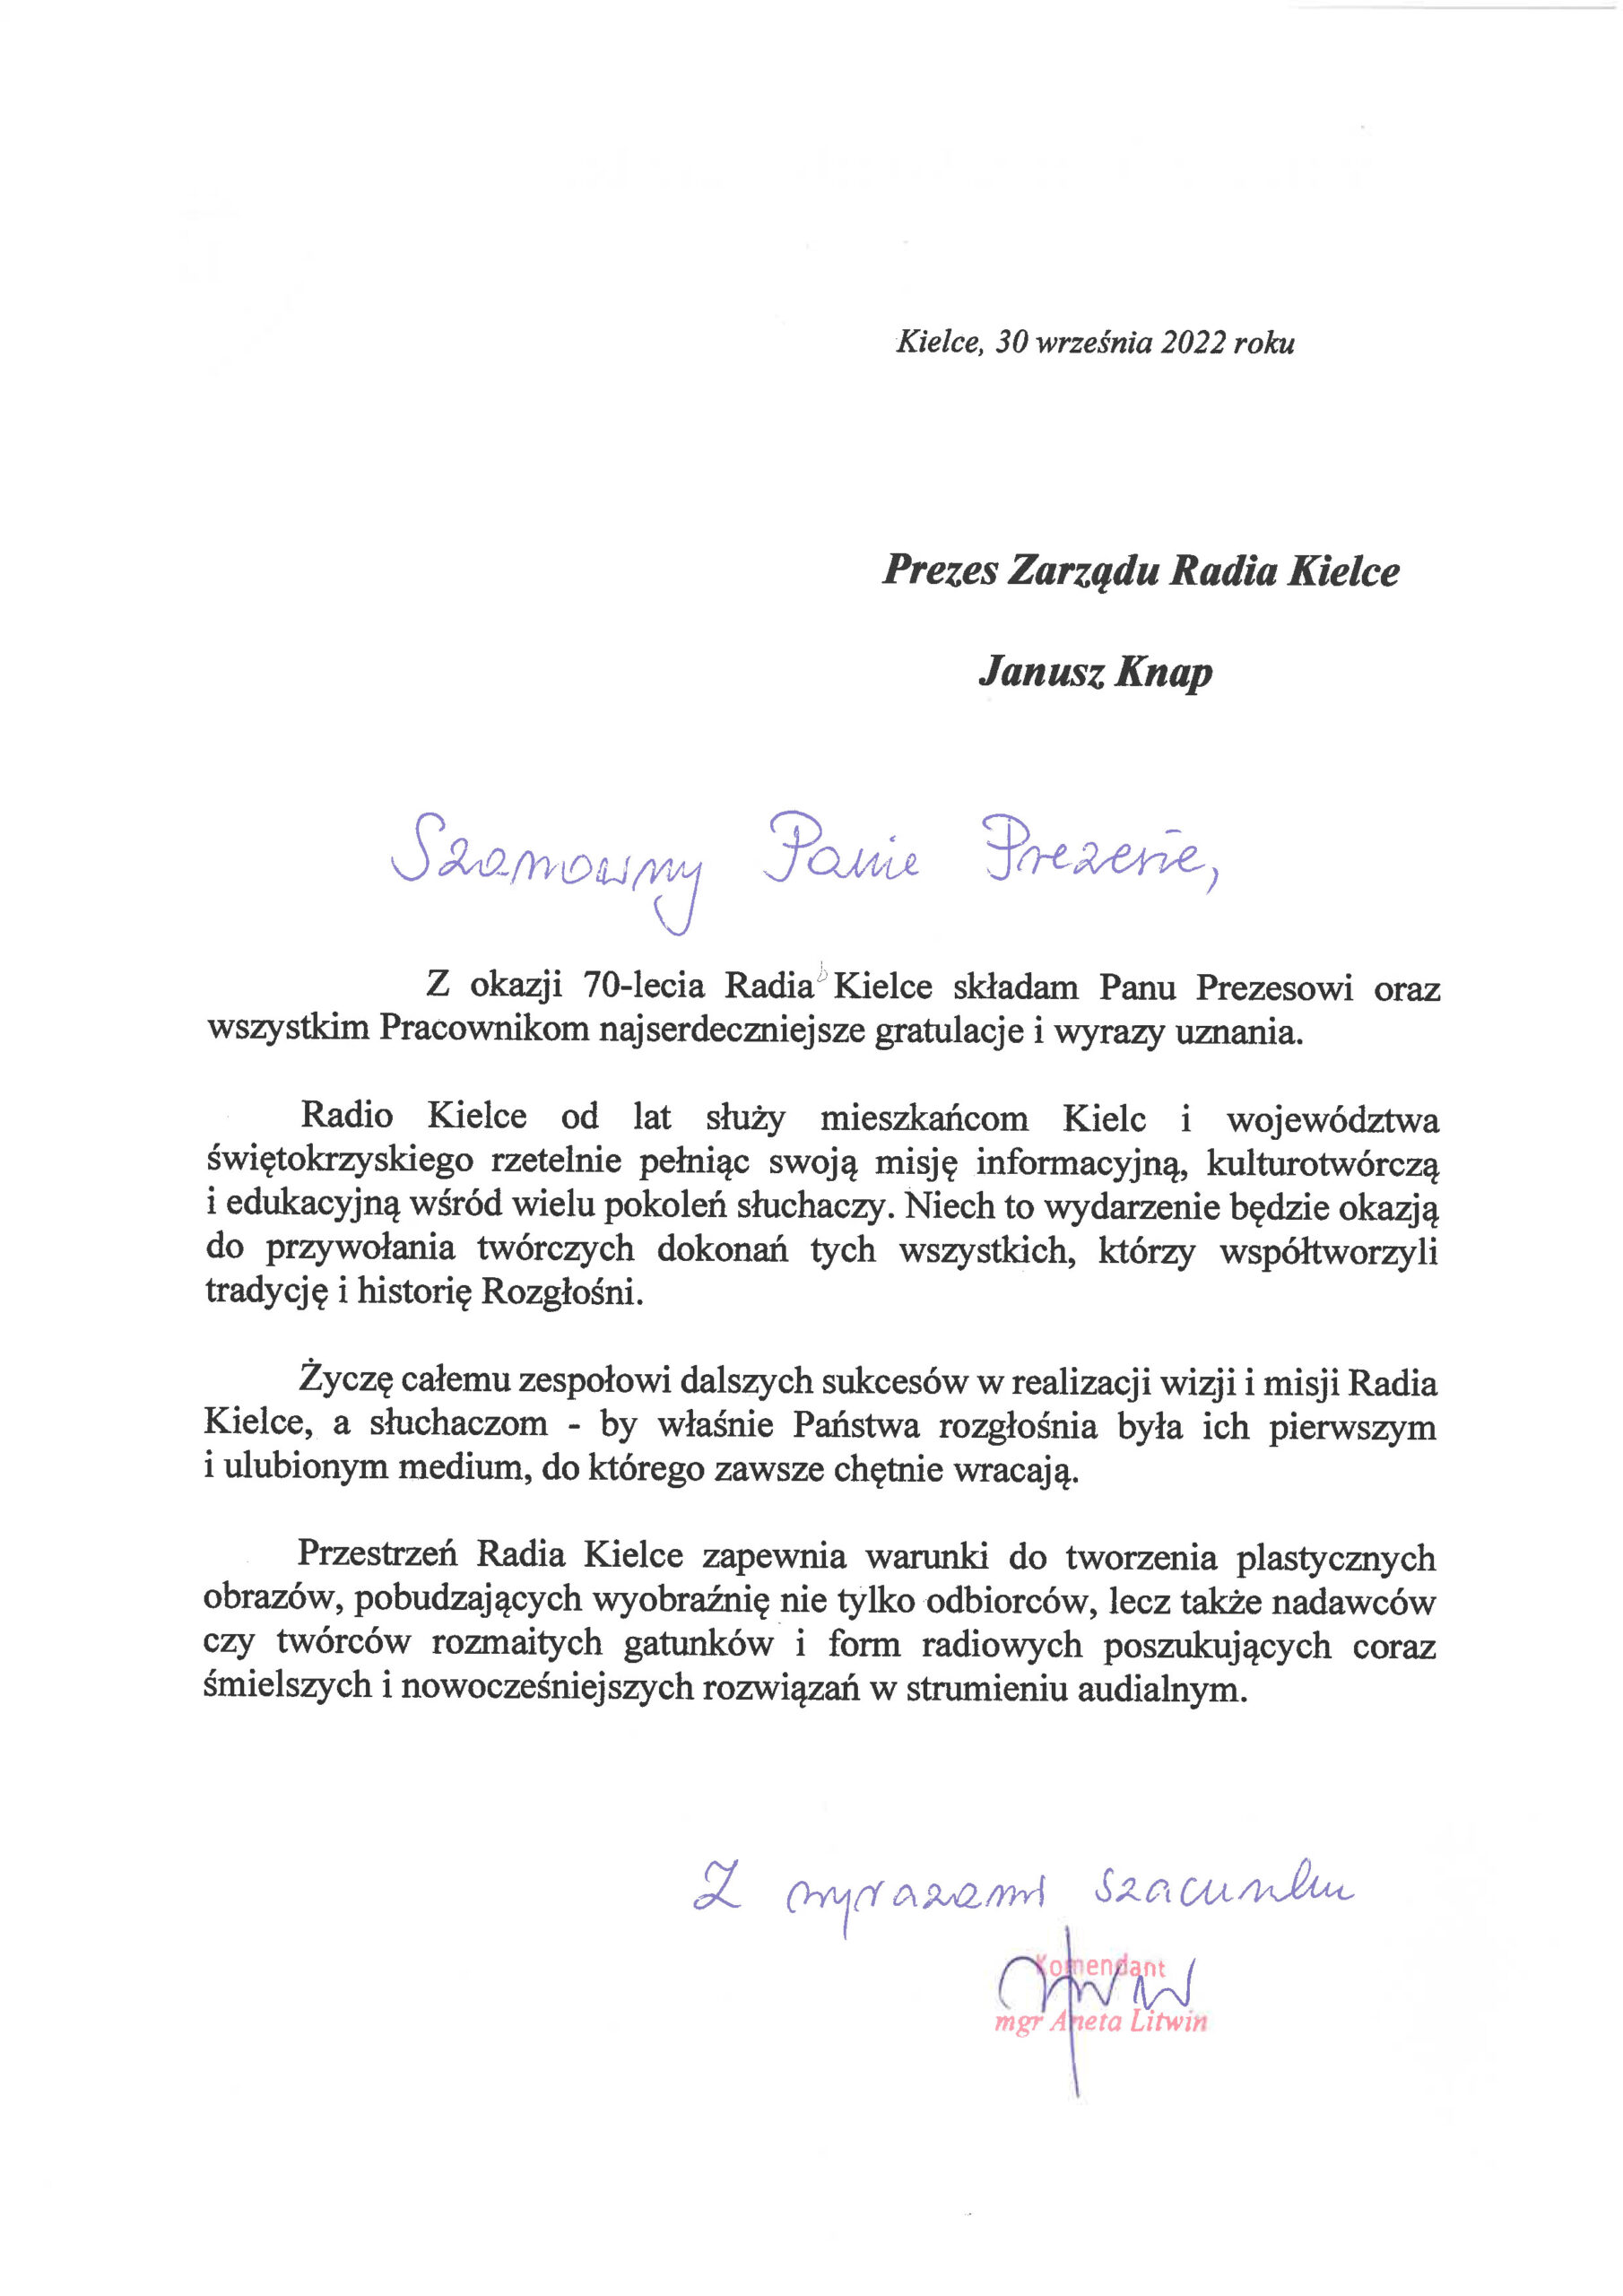 Gratulacje i życzenia z okazji jubileuszu 70-lecia Polskiego Radia Kielce - Radio Kielce